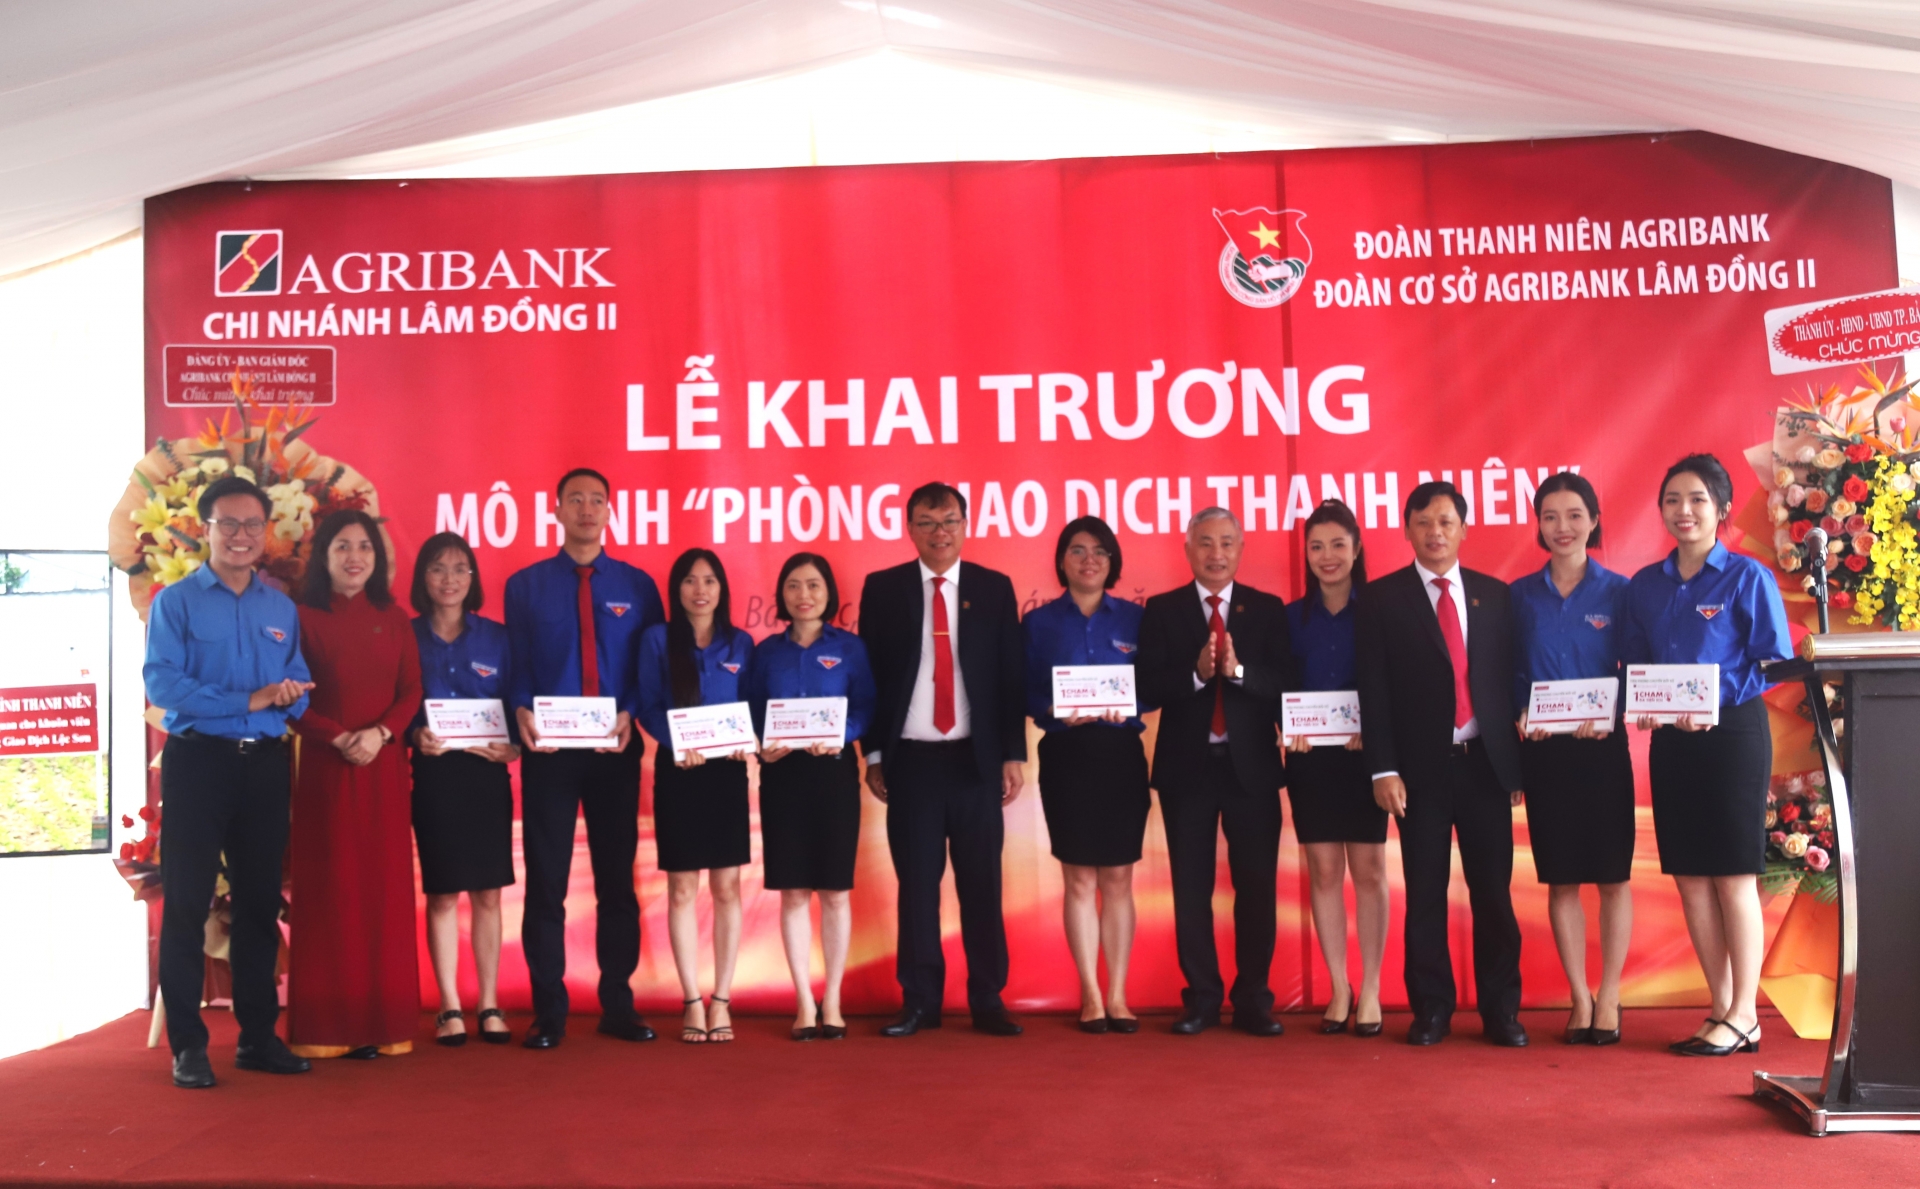 Lãnh đạo Agribank chi nhánh Lâm Đồng II trao máy tính bảng cho cán bộ, nhân viên tại Phòng giao dịch thanh niên